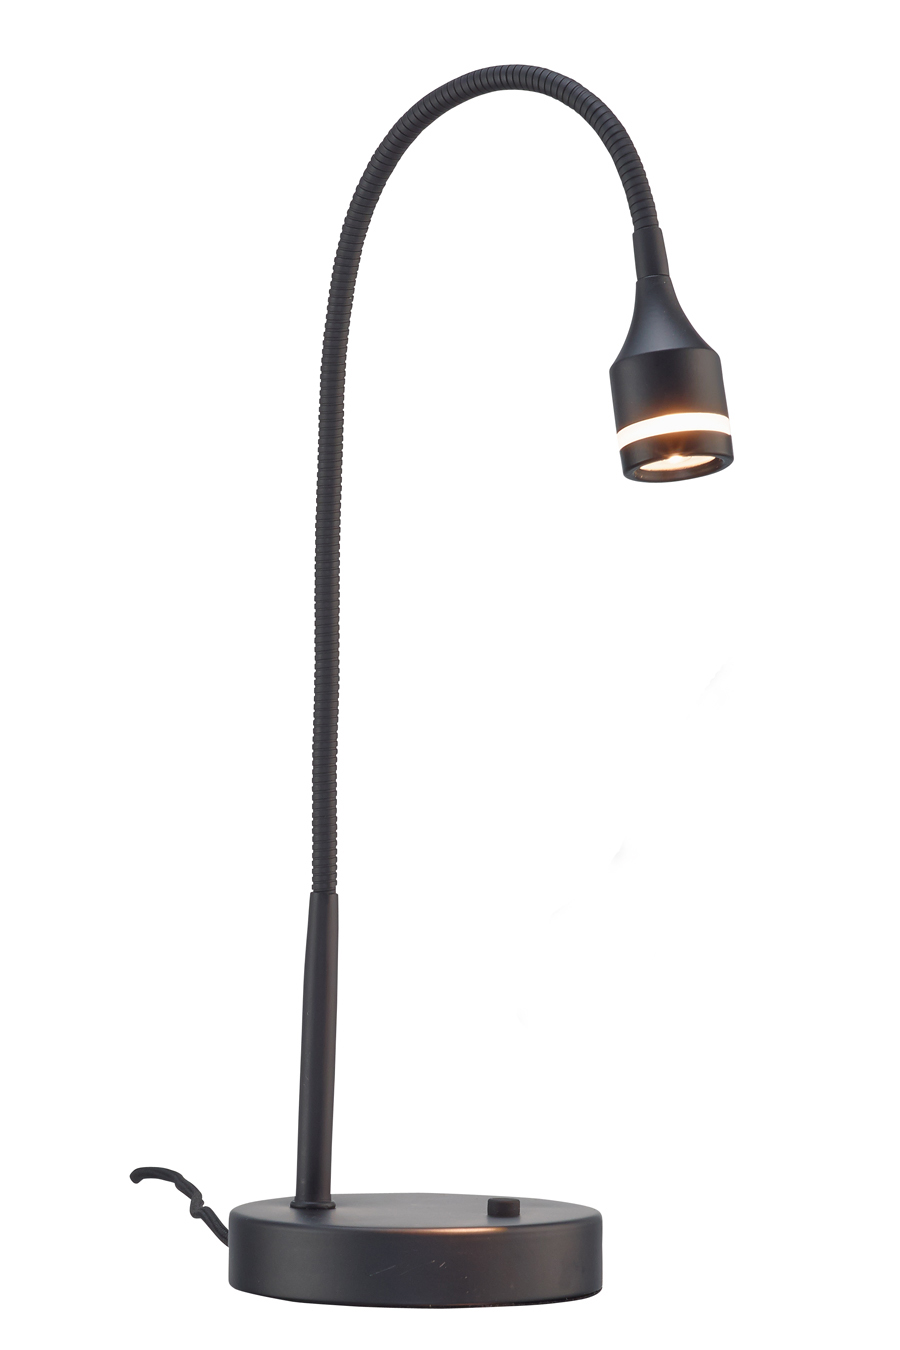 Matte Black Metal Led Adjustable Desk Lamp-372543-1